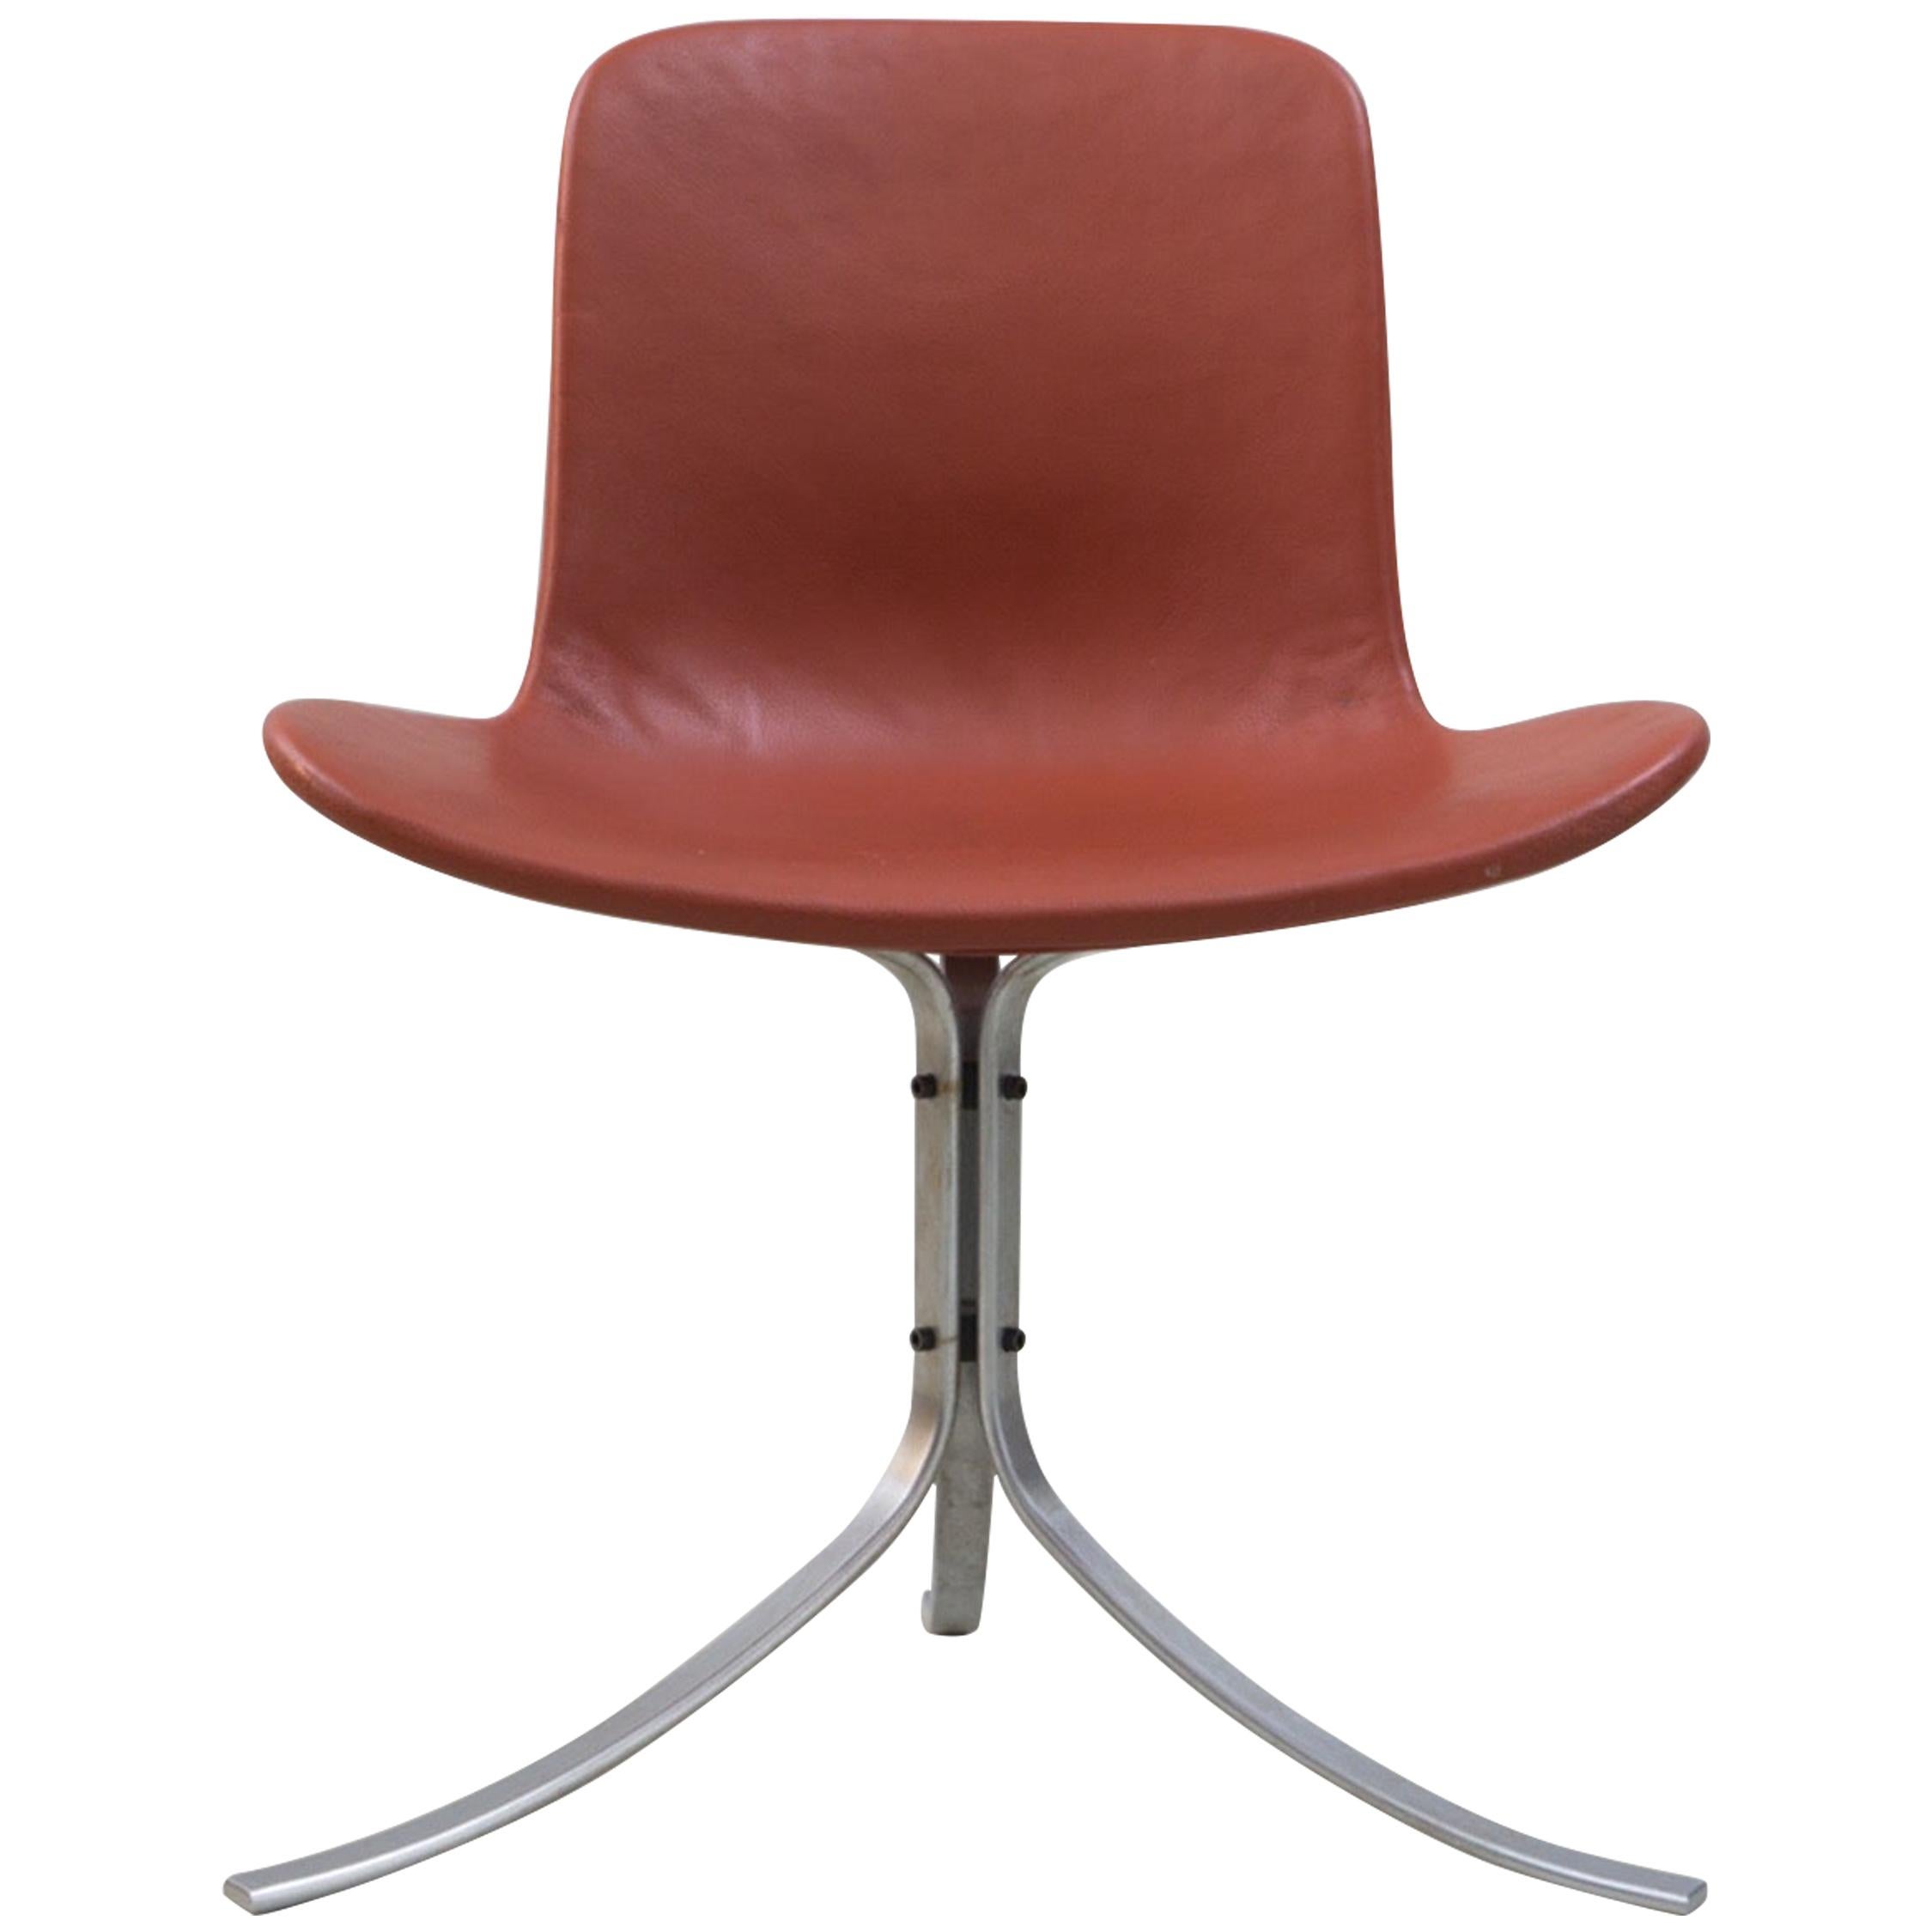 Chair 'PK 9' by Poul Kjaerholm, Fritz Hansen, Steel, Leather, 1960